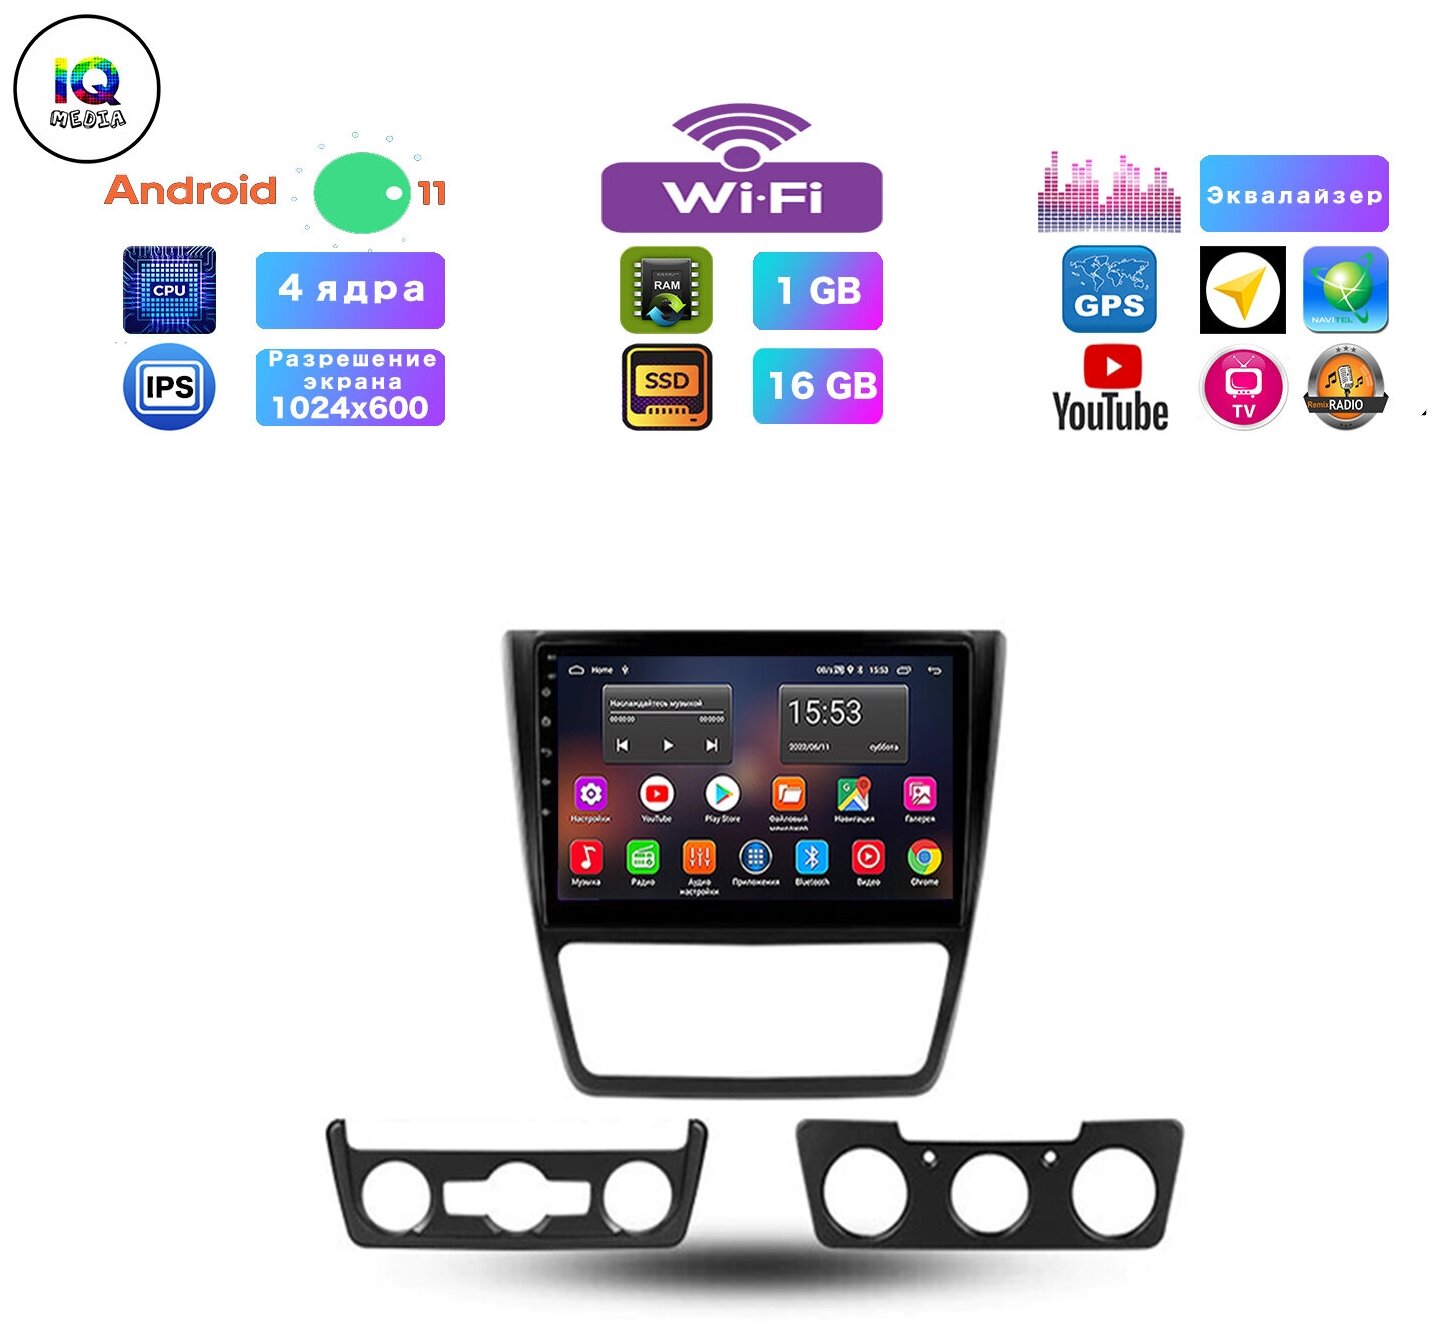 Автомагнитола для SKODA Yeti (2009-2017), Android 11, 1/16 Gb, Wi-Fi, Bluetooth, Hands Free, разделение экрана, поддержка кнопок на руле